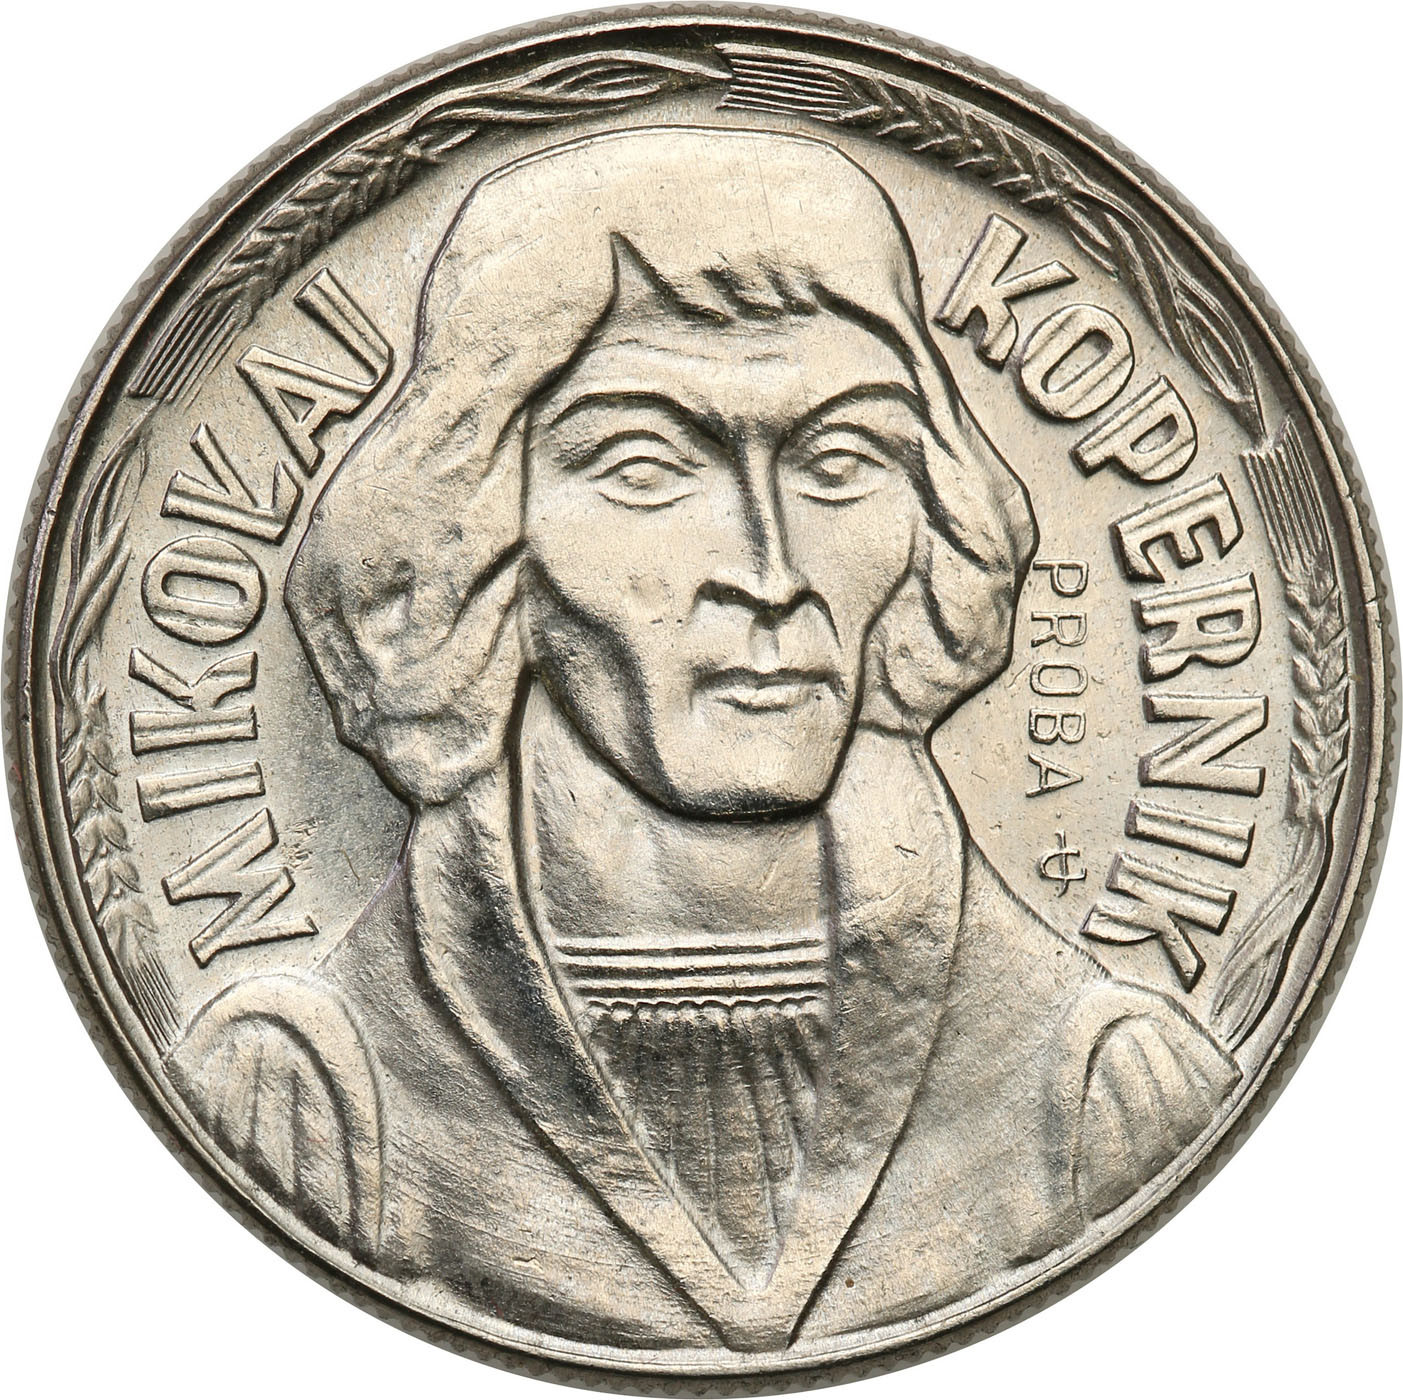 PRL. PRÓBA Nikiel 10 złotych 1967 Kopernik